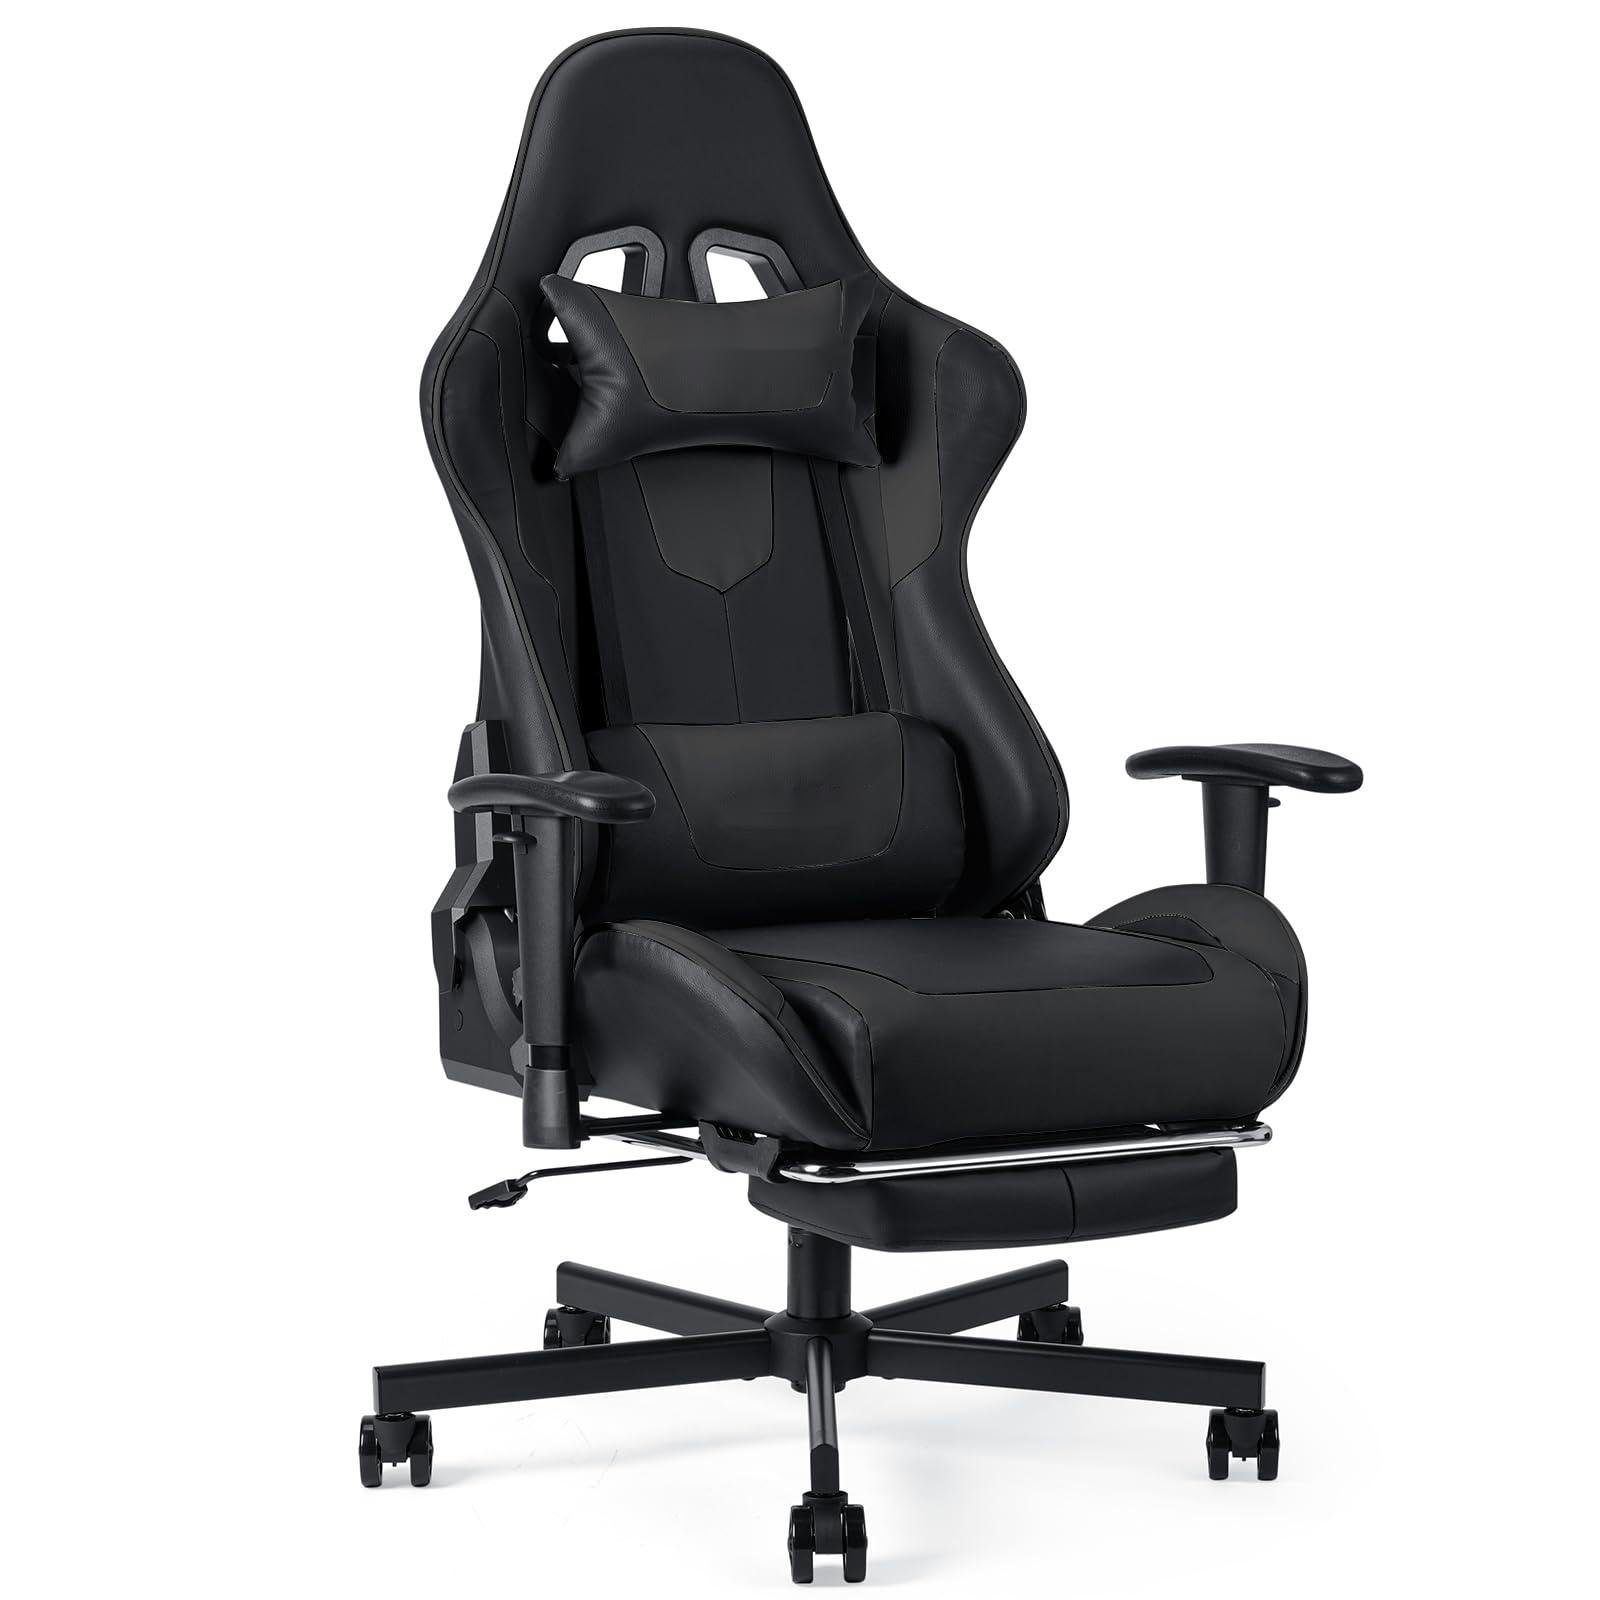 Fangqi Gaming Chair Gaming-Stuhl mit Fußstütze, ergonomischer Bürostuhl (Armlehnen, Sitzhöhe verstellbar, Neigungswinkel der Rückenlehne verstellbar, 360° drehbar, Nackenkissen, Lendenkissen)